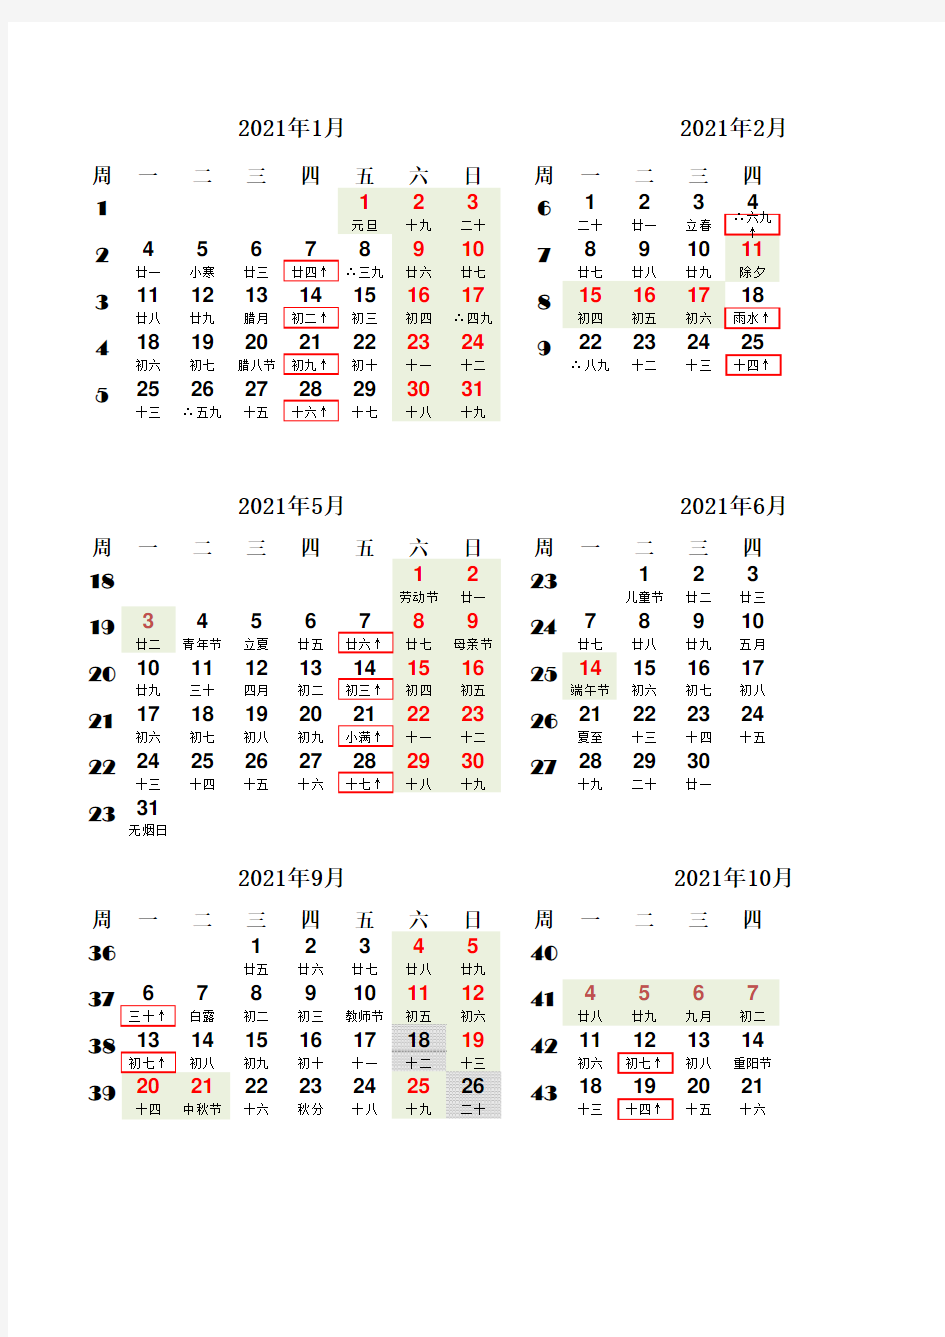 2021年日历-横版-阳历、农历、二十四节气、国家节假日、数九、三伏、北京尾号1,6限行日加框